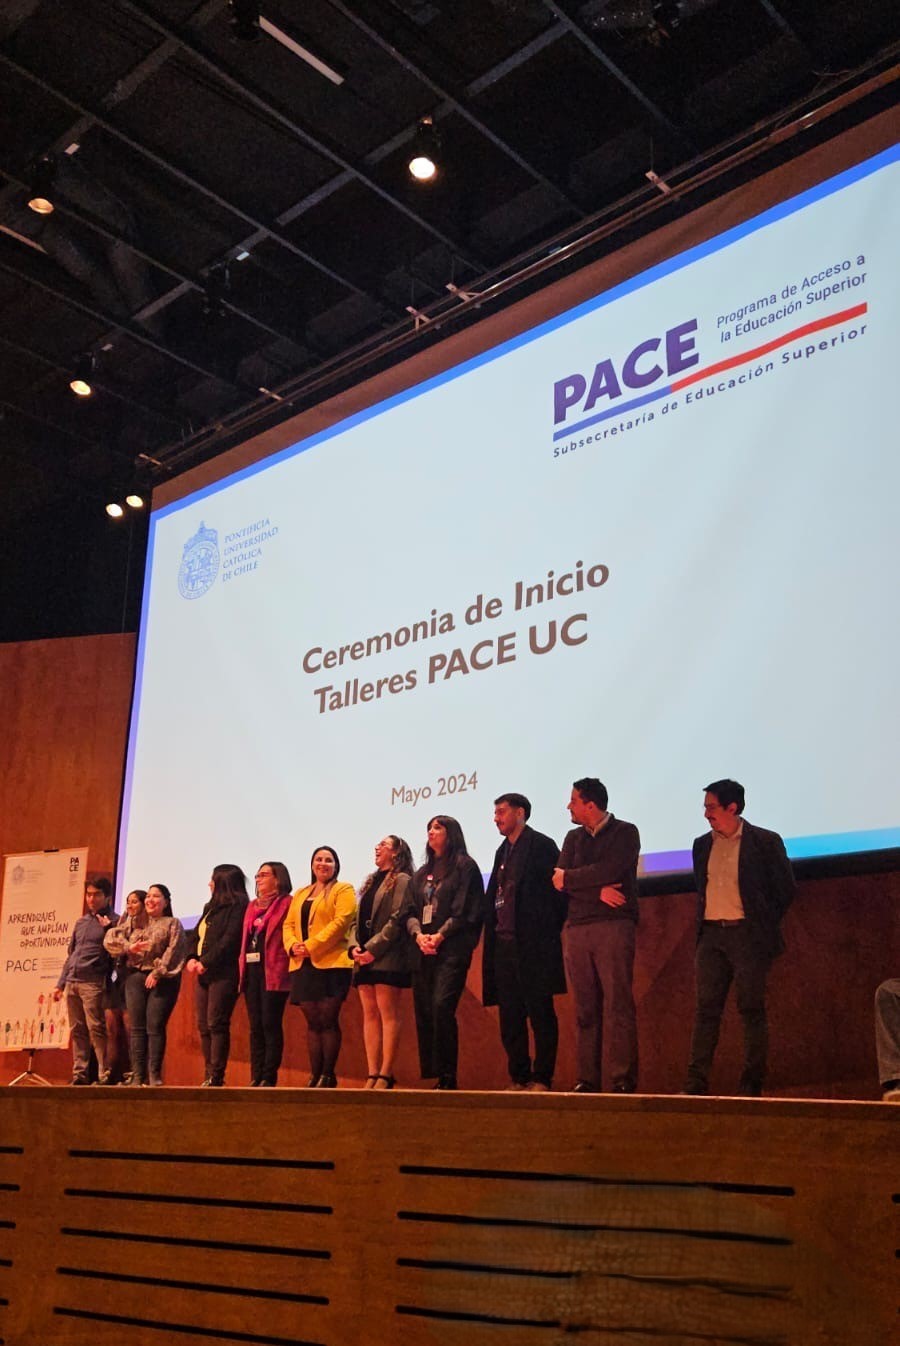 Profesionales equipo PACE UC posando en el escenario del auditorio durante ceremonia bienvenida Talleres PACE UC 